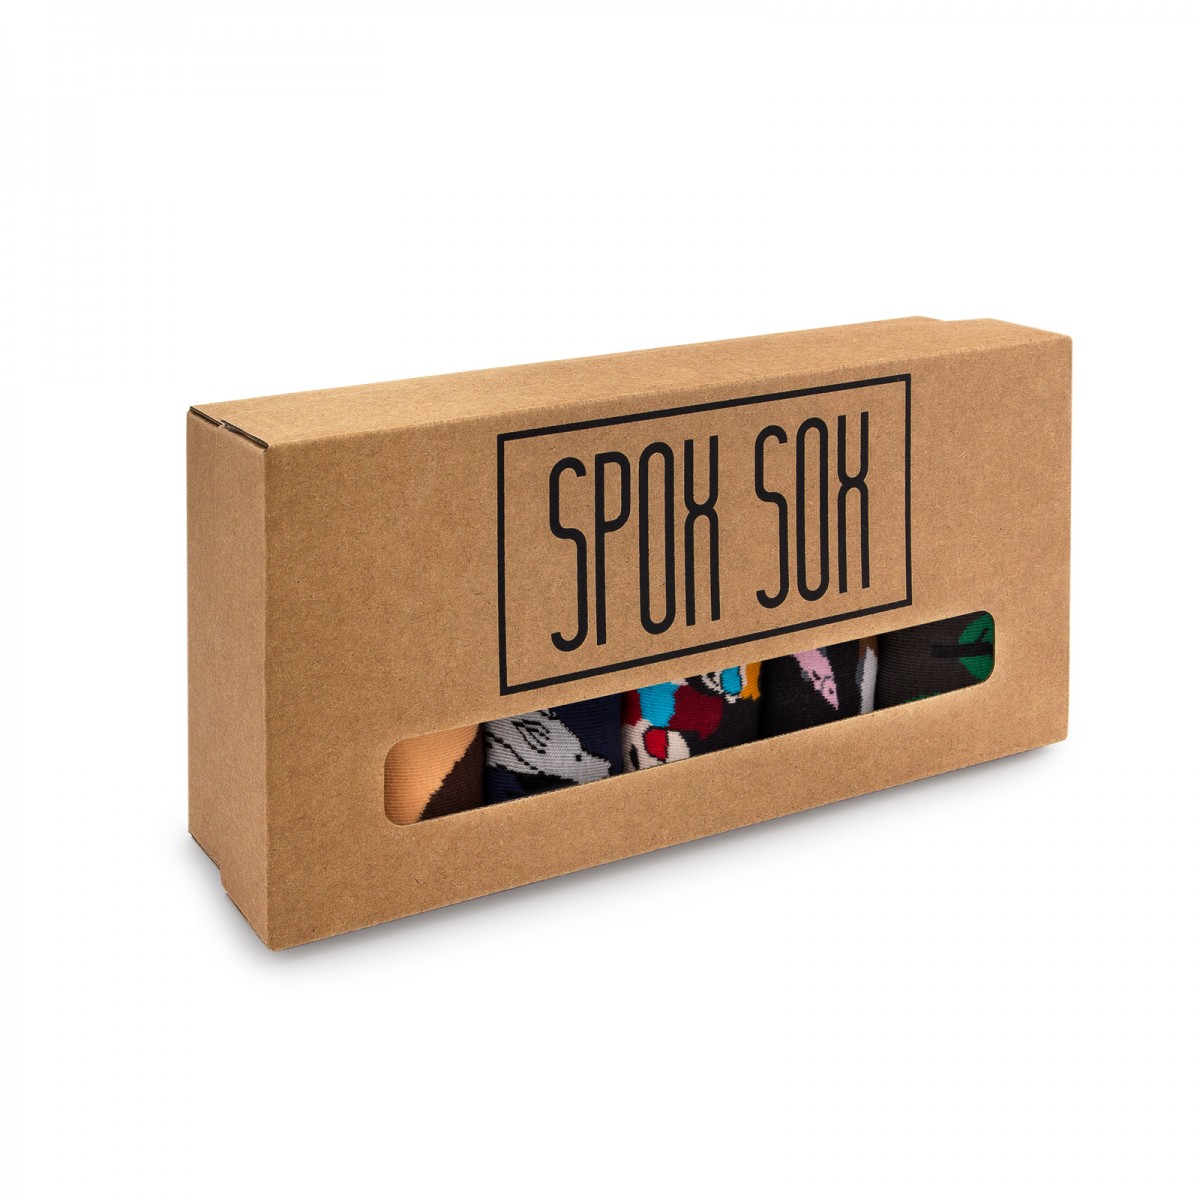 Zestaw kolorowych skarpet - Spox Sox